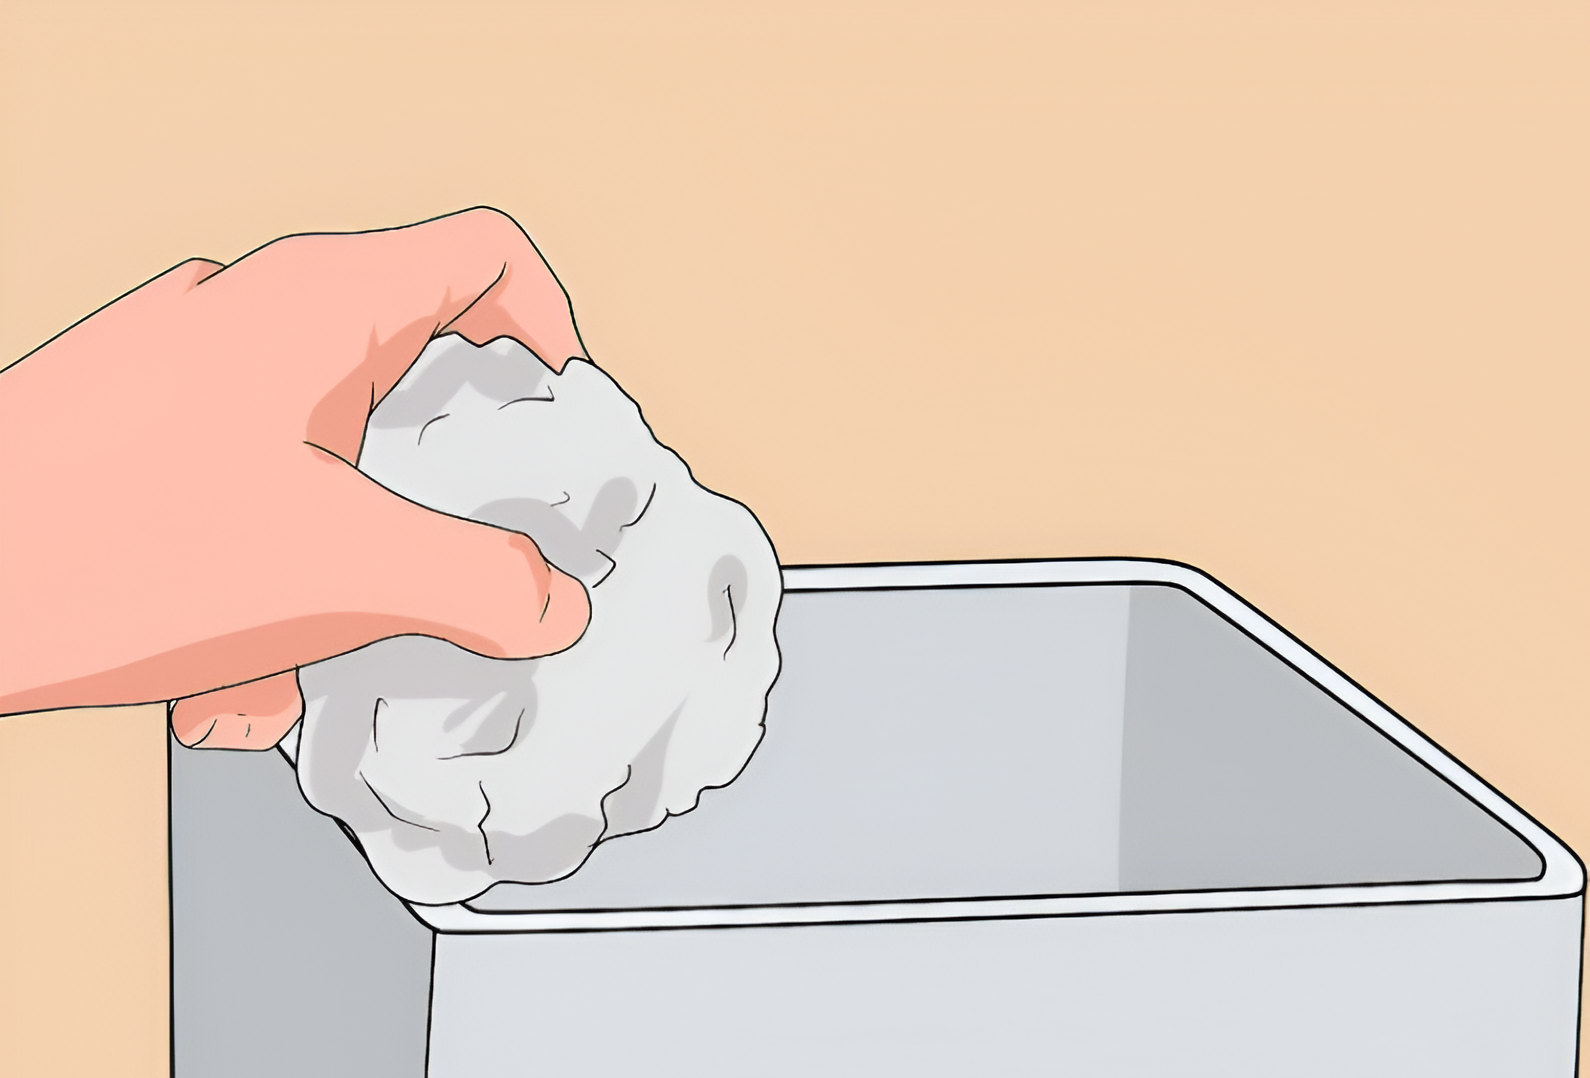 Vò và bỏ thêm giấy vào thùng bảo quản đá khô